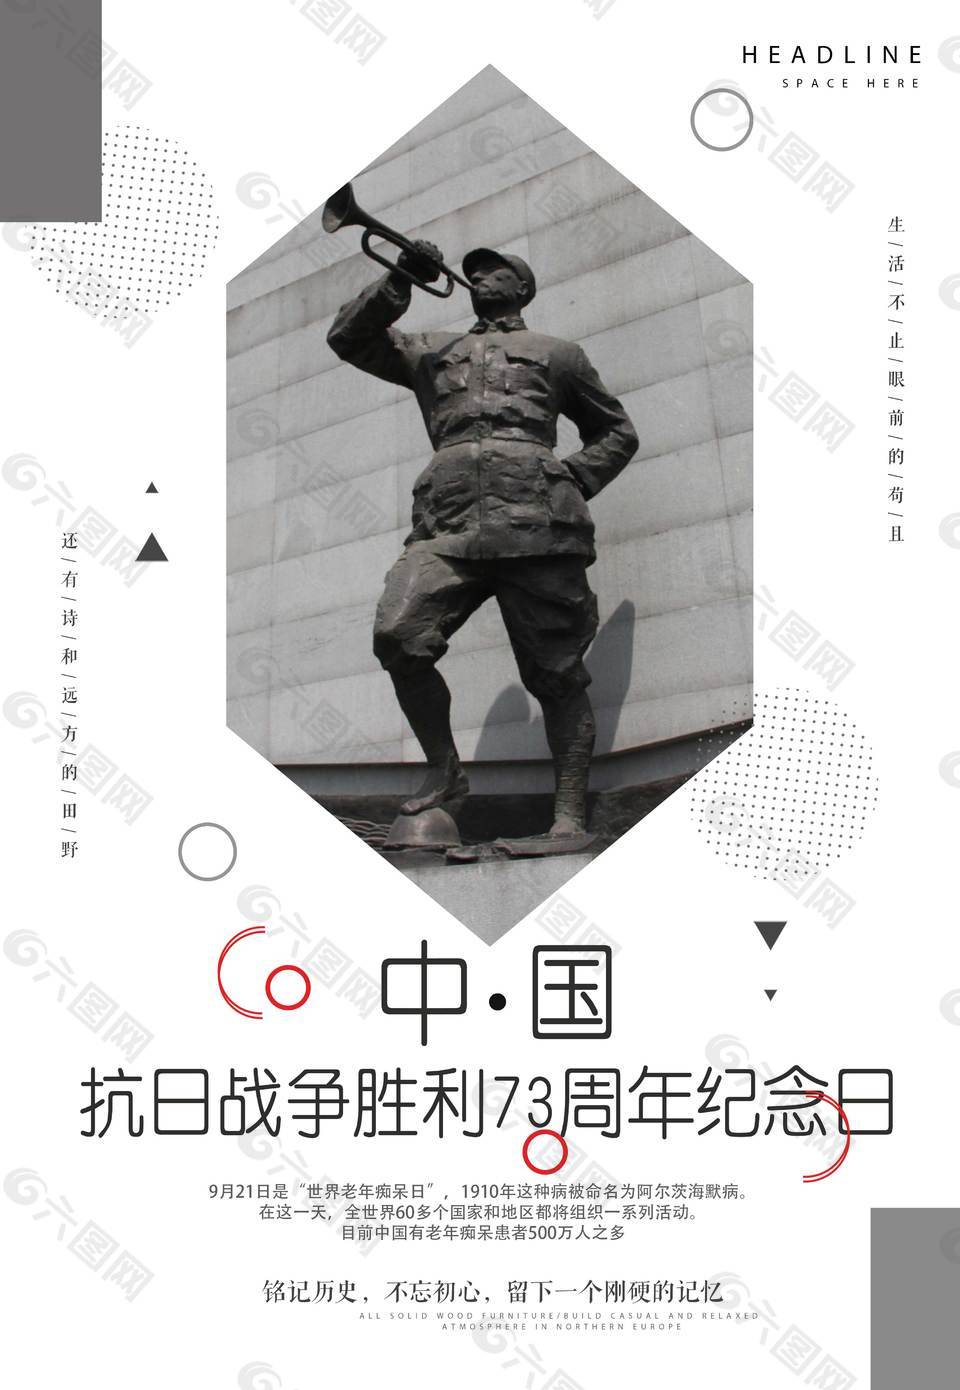 中国抗战胜利73周年纪念日